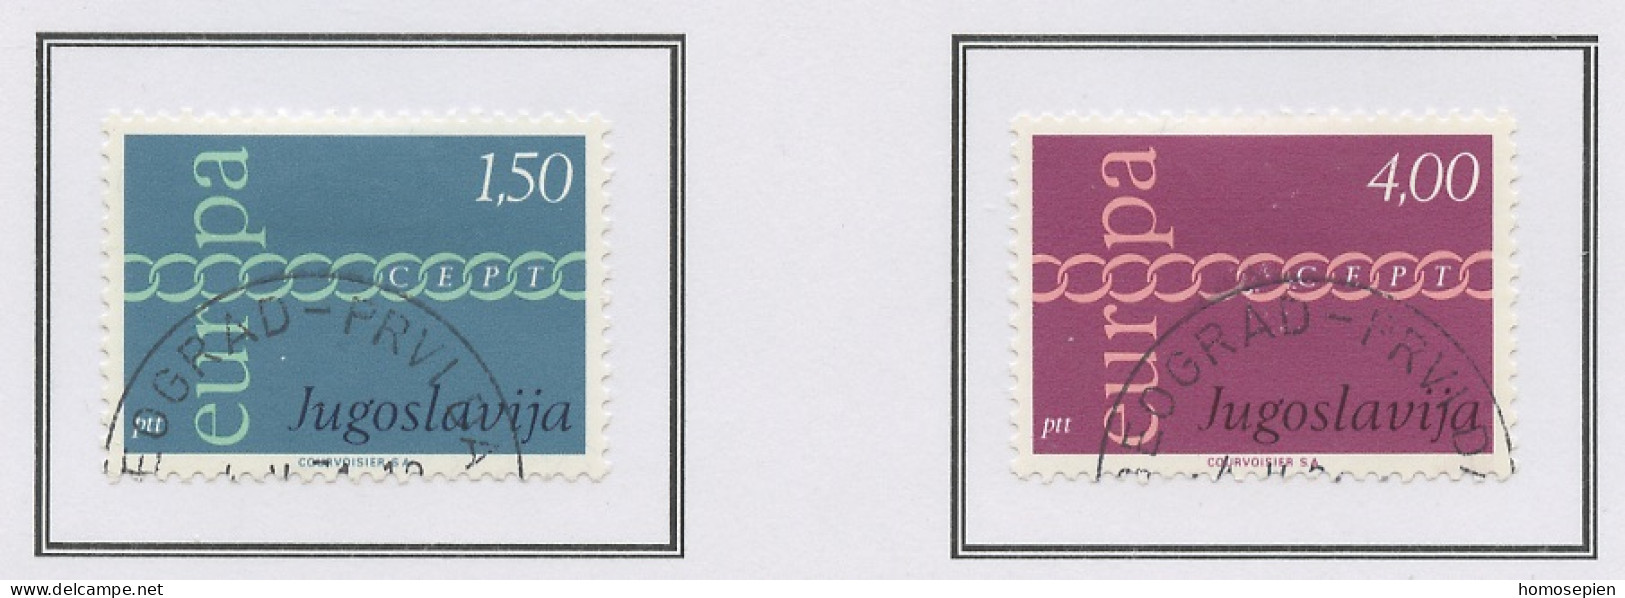 Yougoslavie - Jugoslawien - Yugoslavia 1971 Y&T N°1301 à 1302 - Michel N°1416 à 1417 (o) - EUROPA - Gebraucht